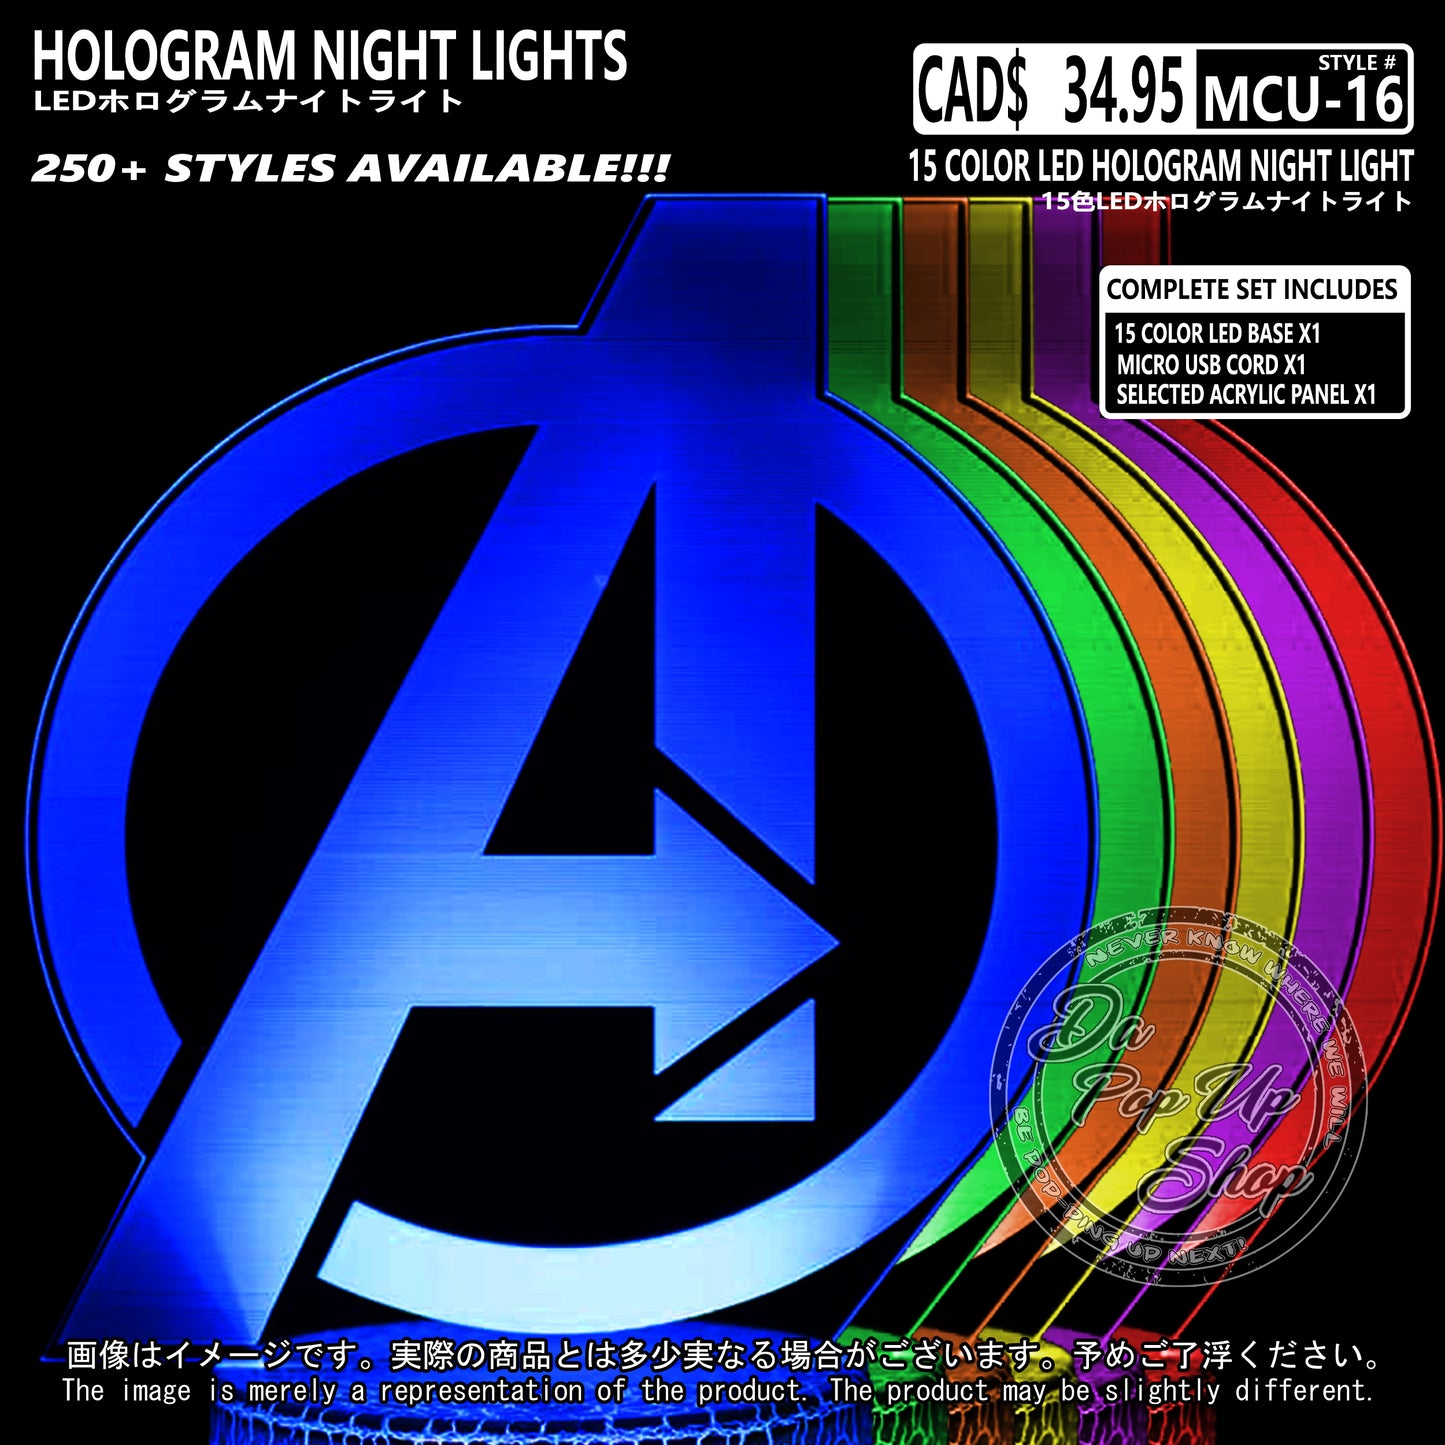 (MCU-16) MCU Marvel Cinematic Universal Hologram LED Night Light